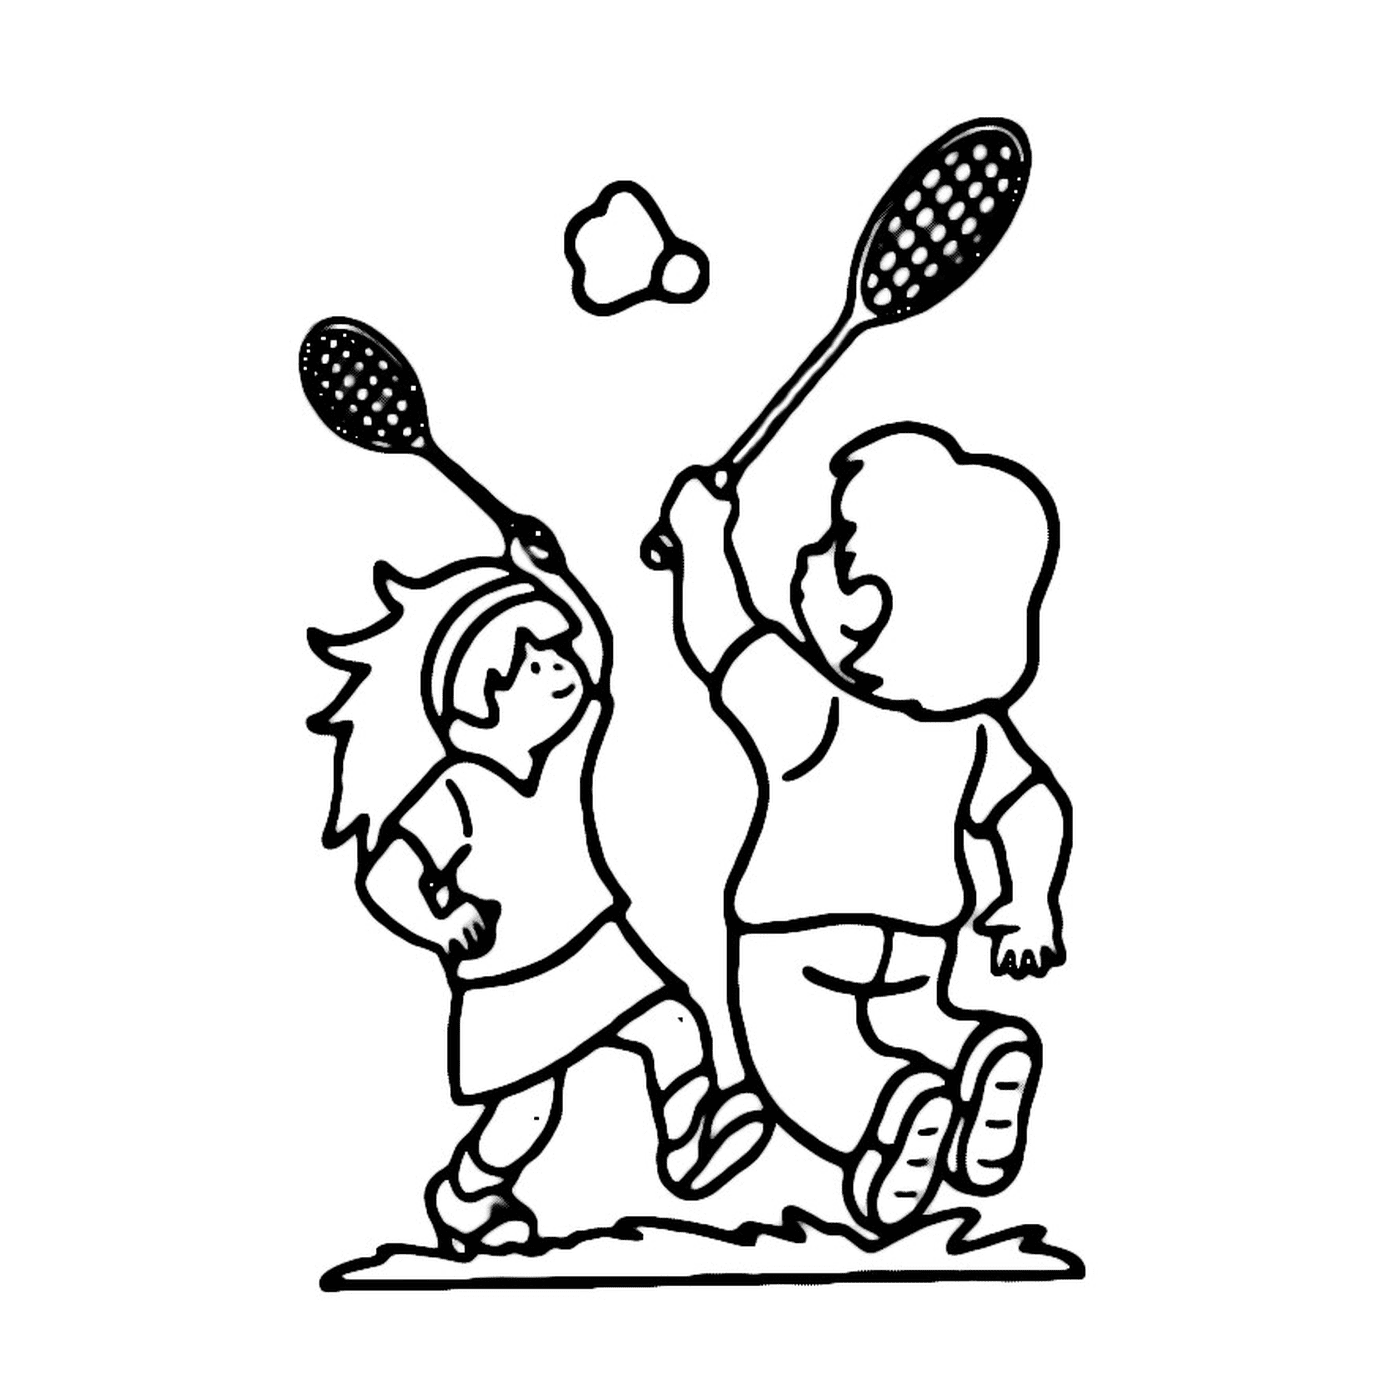  两个孩子在一个田里玩羽毛球 